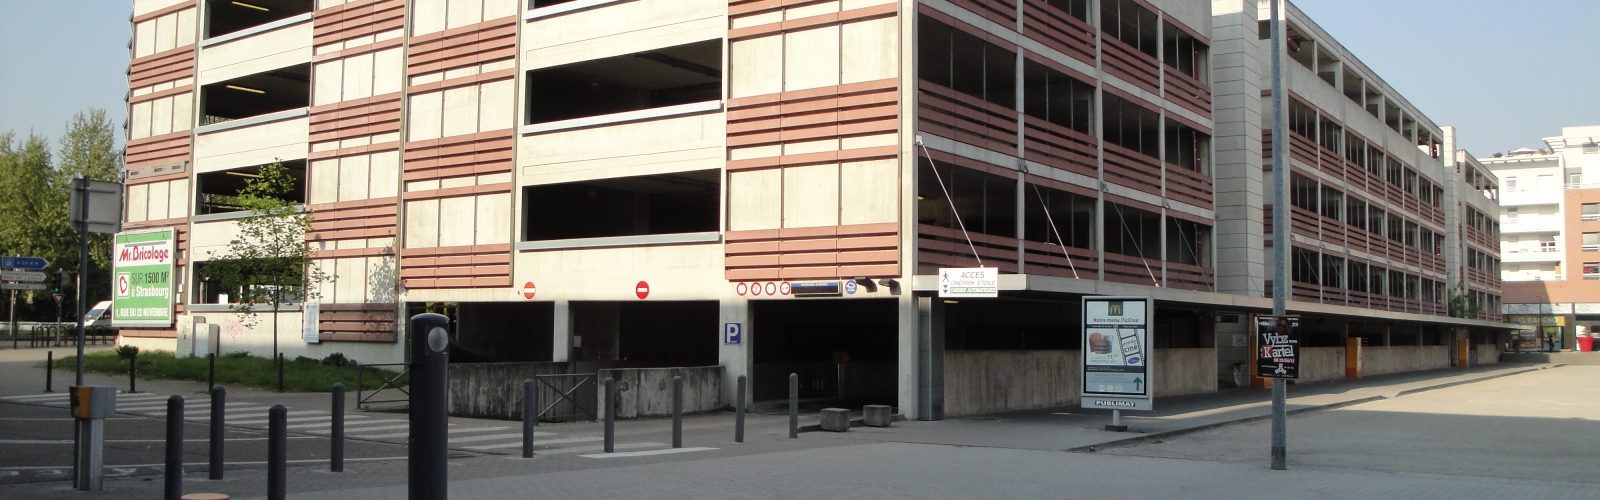 PARCUS - les projets en cours - Parking RivEtoile Cinéma